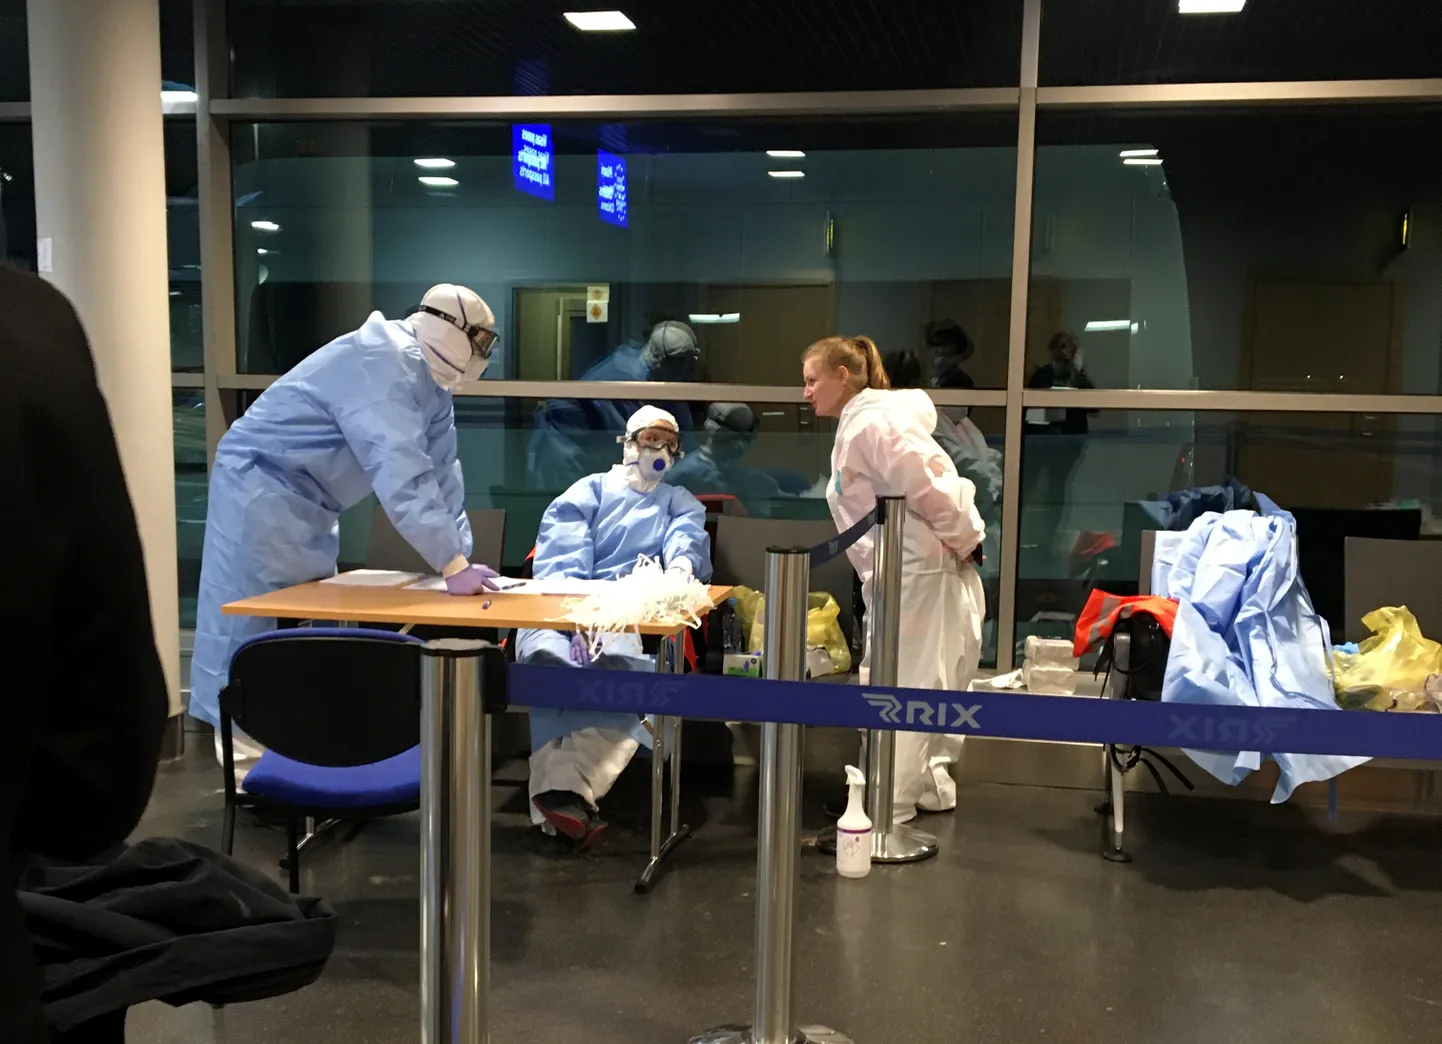 Lidostā "Rīga" ielidojošiem pasažieriem ar gripai līdzīgiem simptomiem ir iespēja veikt Covid-19 testu.